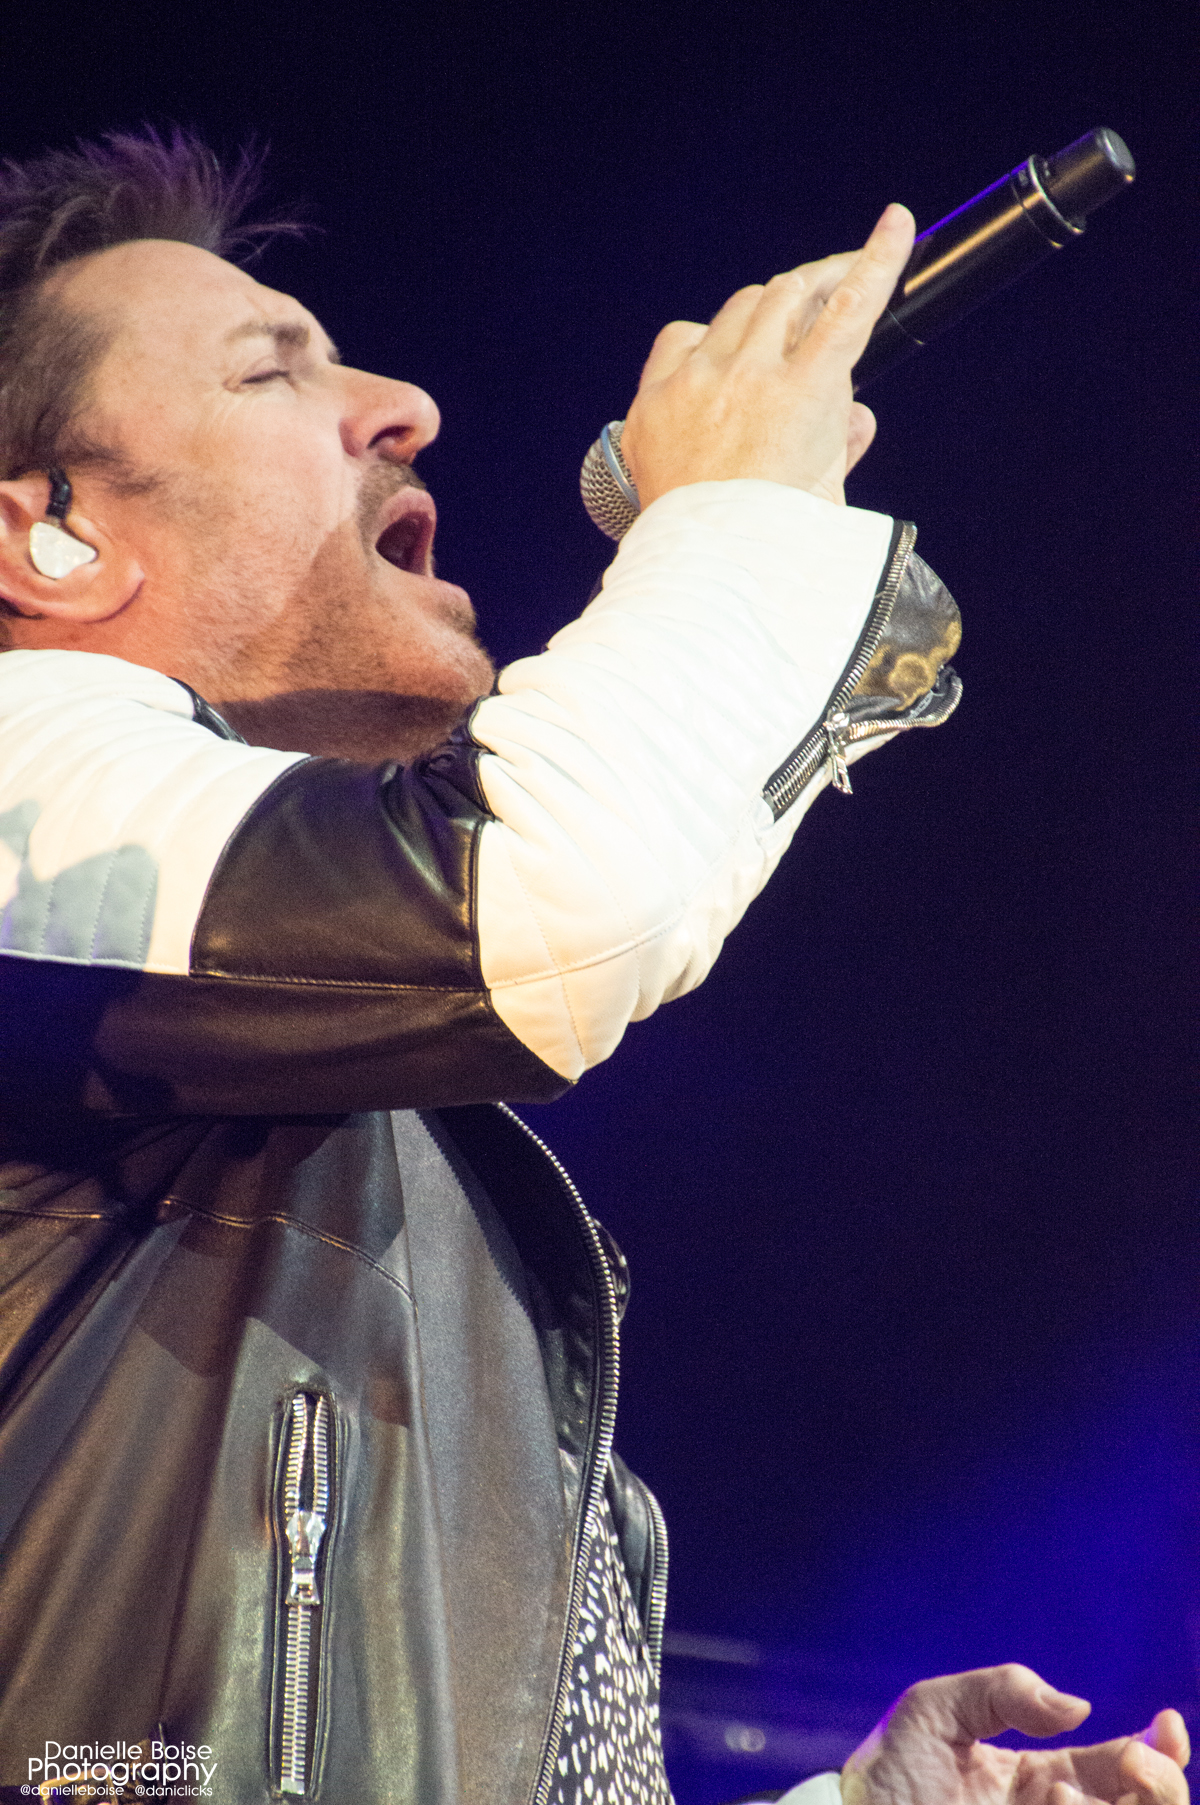 Duran Duran 'Paper Gods' Tour at Philips Arena in Atlanta